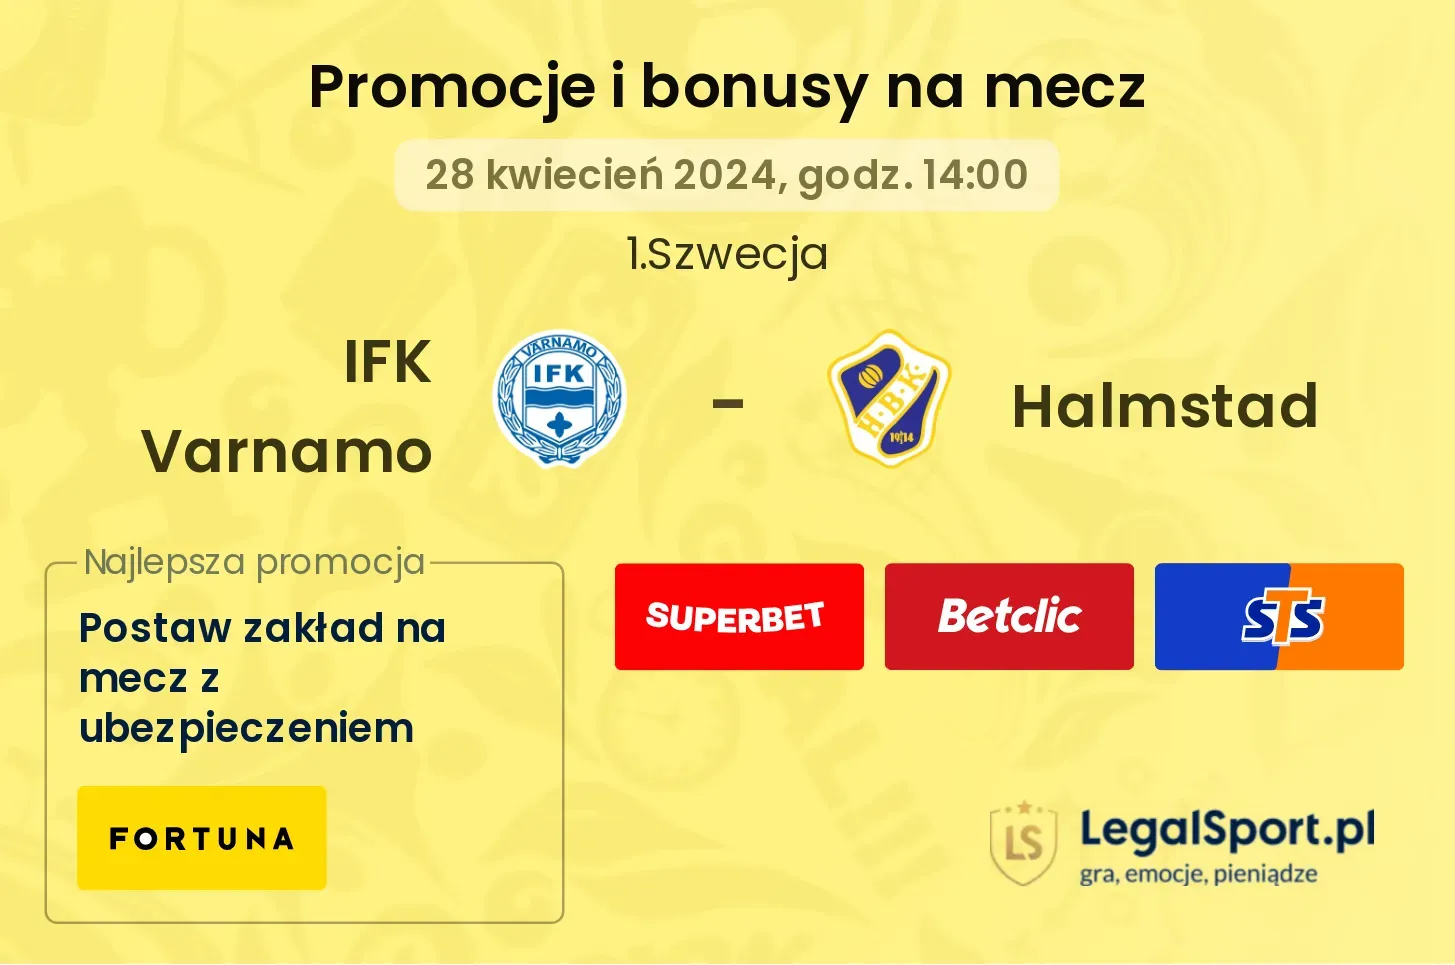 IFK Varnamo - Halmstad promocje bonusy na mecz